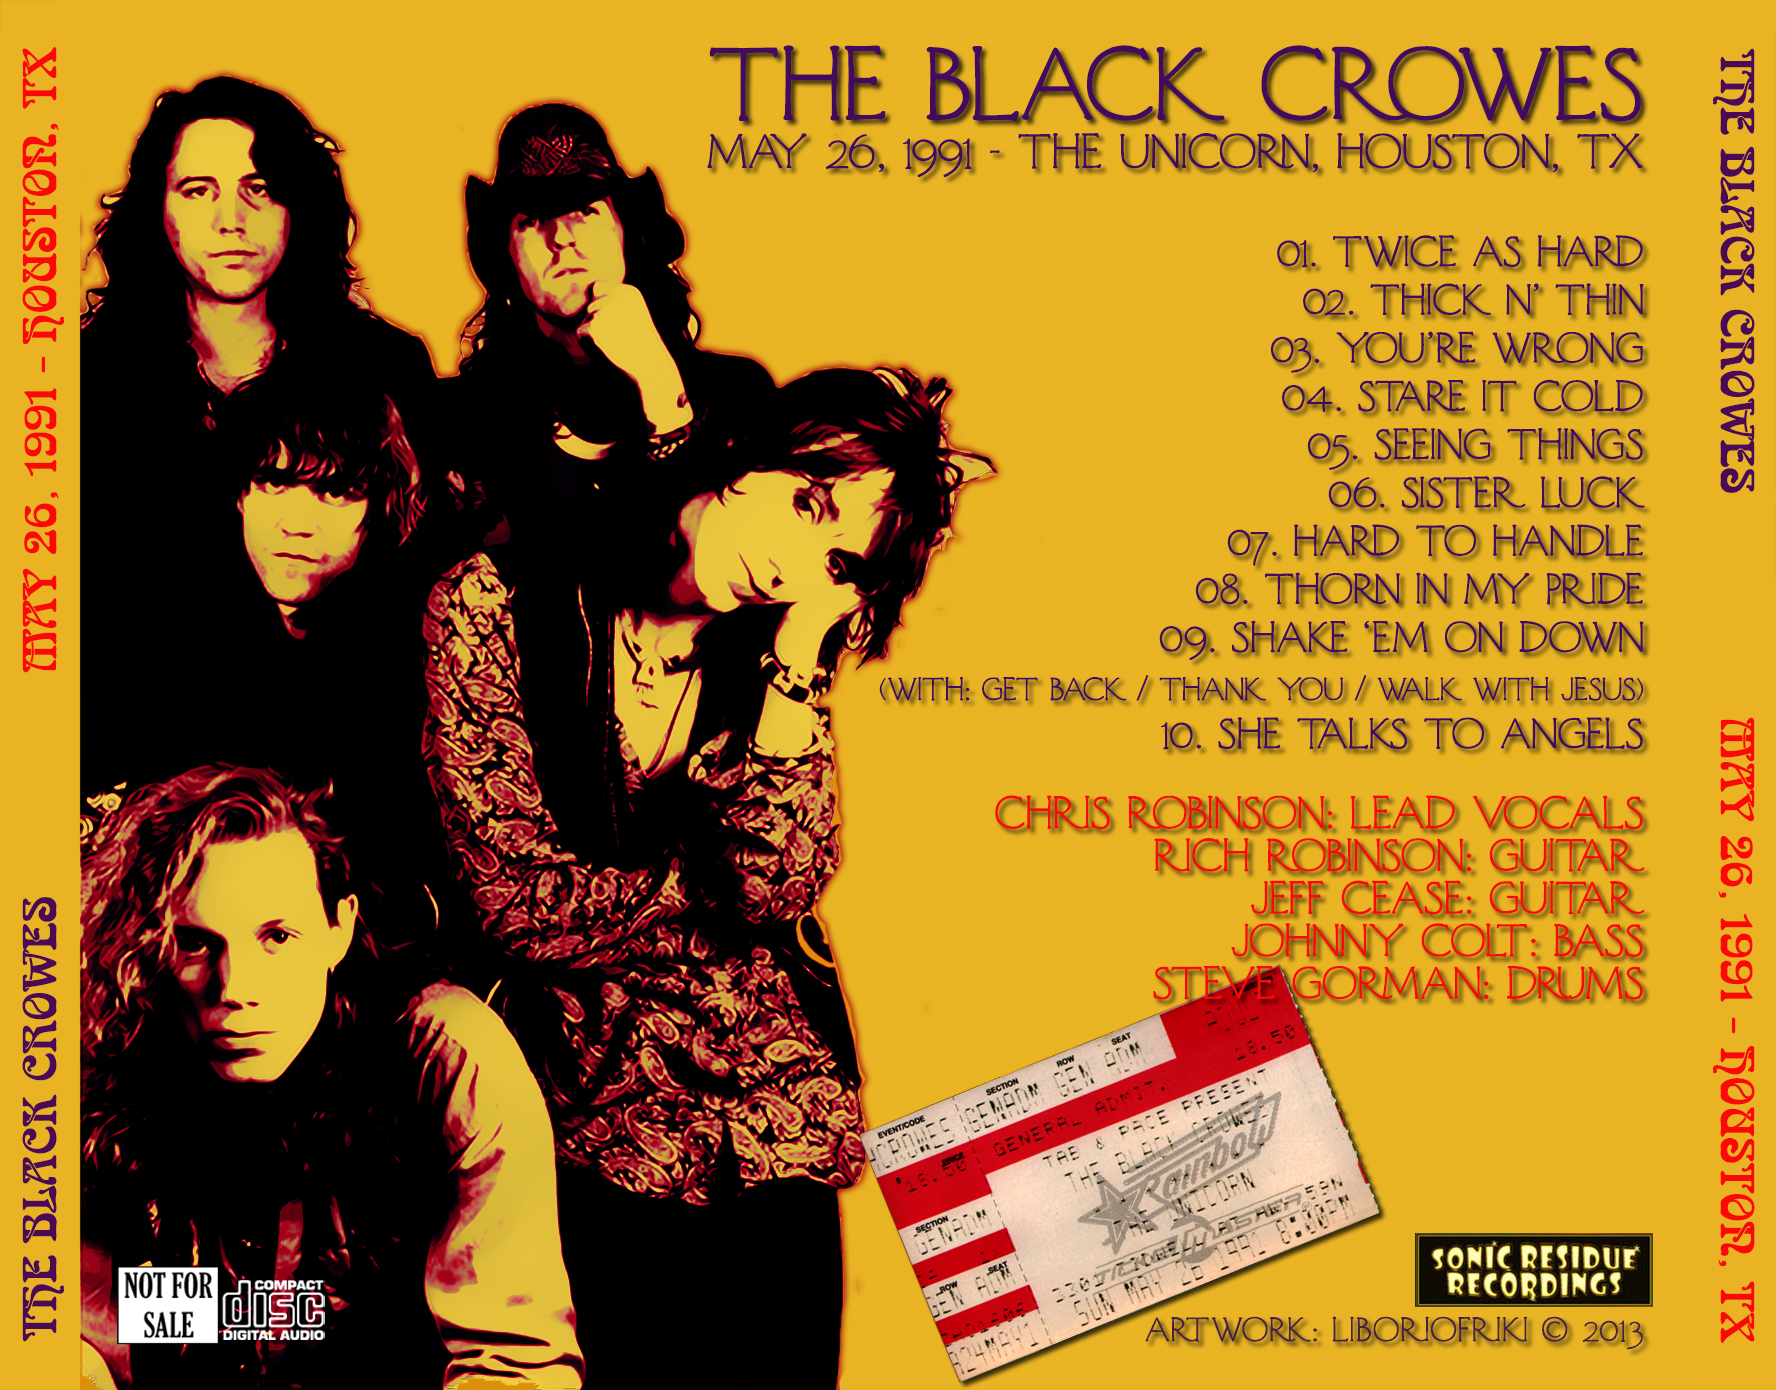 BlackCrowes1991-05-26TheUnicornHoustonTX (1).jpg